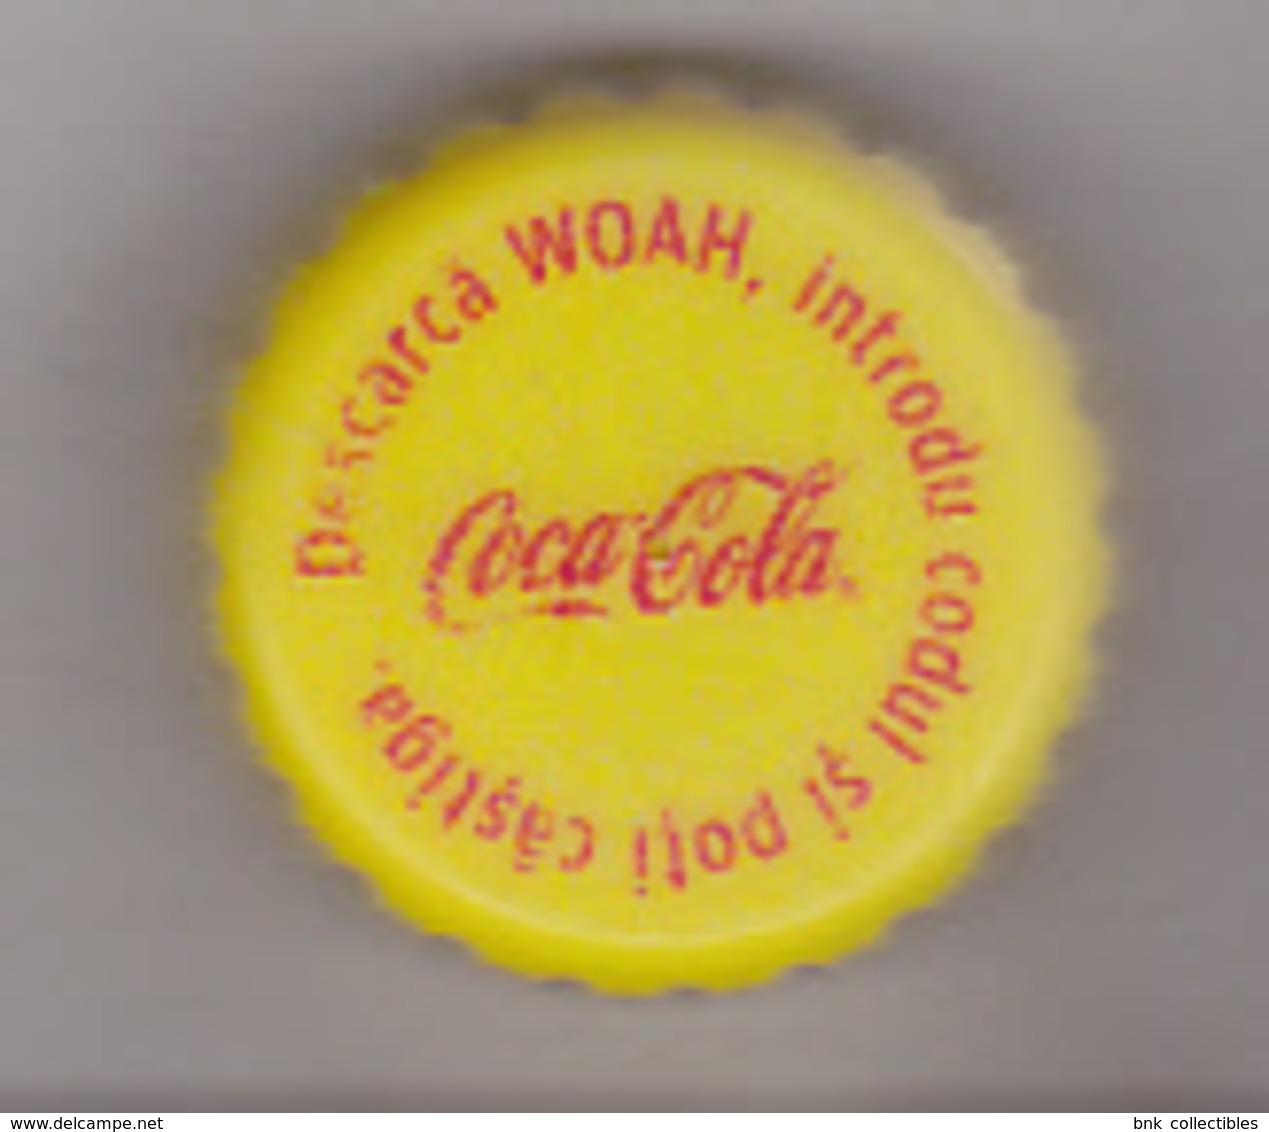 Romania Coca Cola Cap - Plastic Cap - Woah - Soda